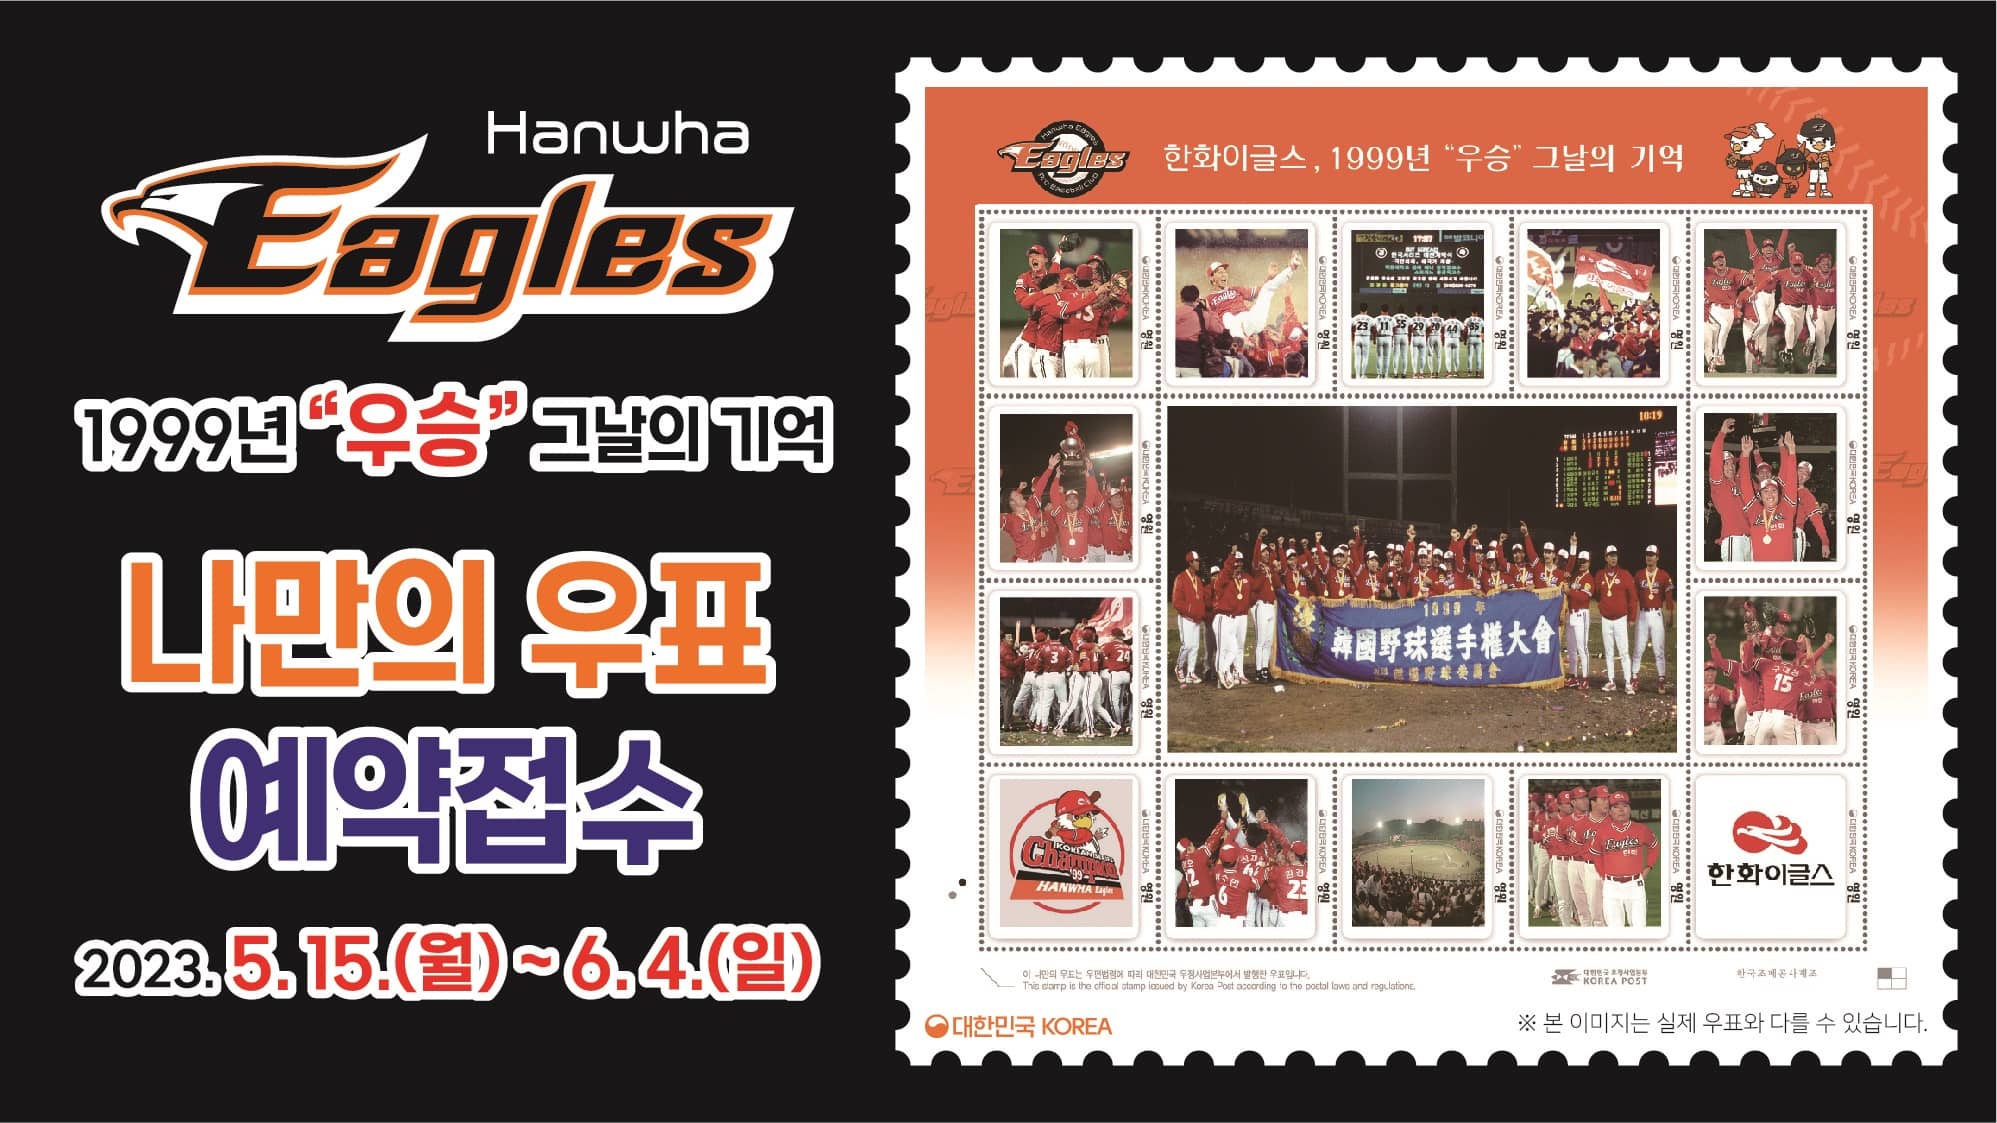 Hanwha Eagles
1999년 "우승" 그날의 기억
나만의 우표
예약접수
2023.5.15.(월) ~ 6.4.(일)